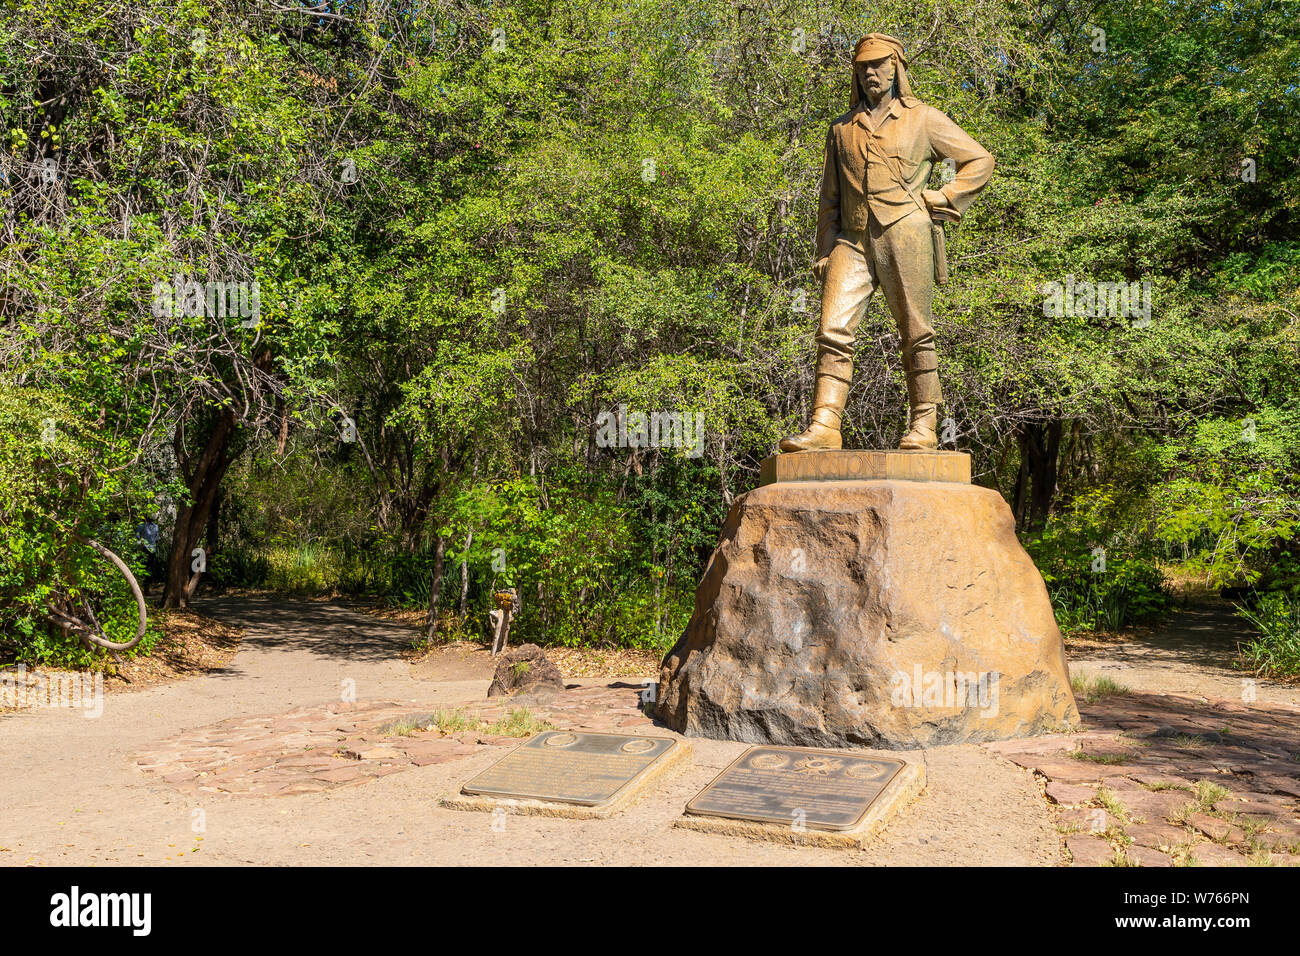 Estatua de David Livingstone en Victoria Falls Foto de stock